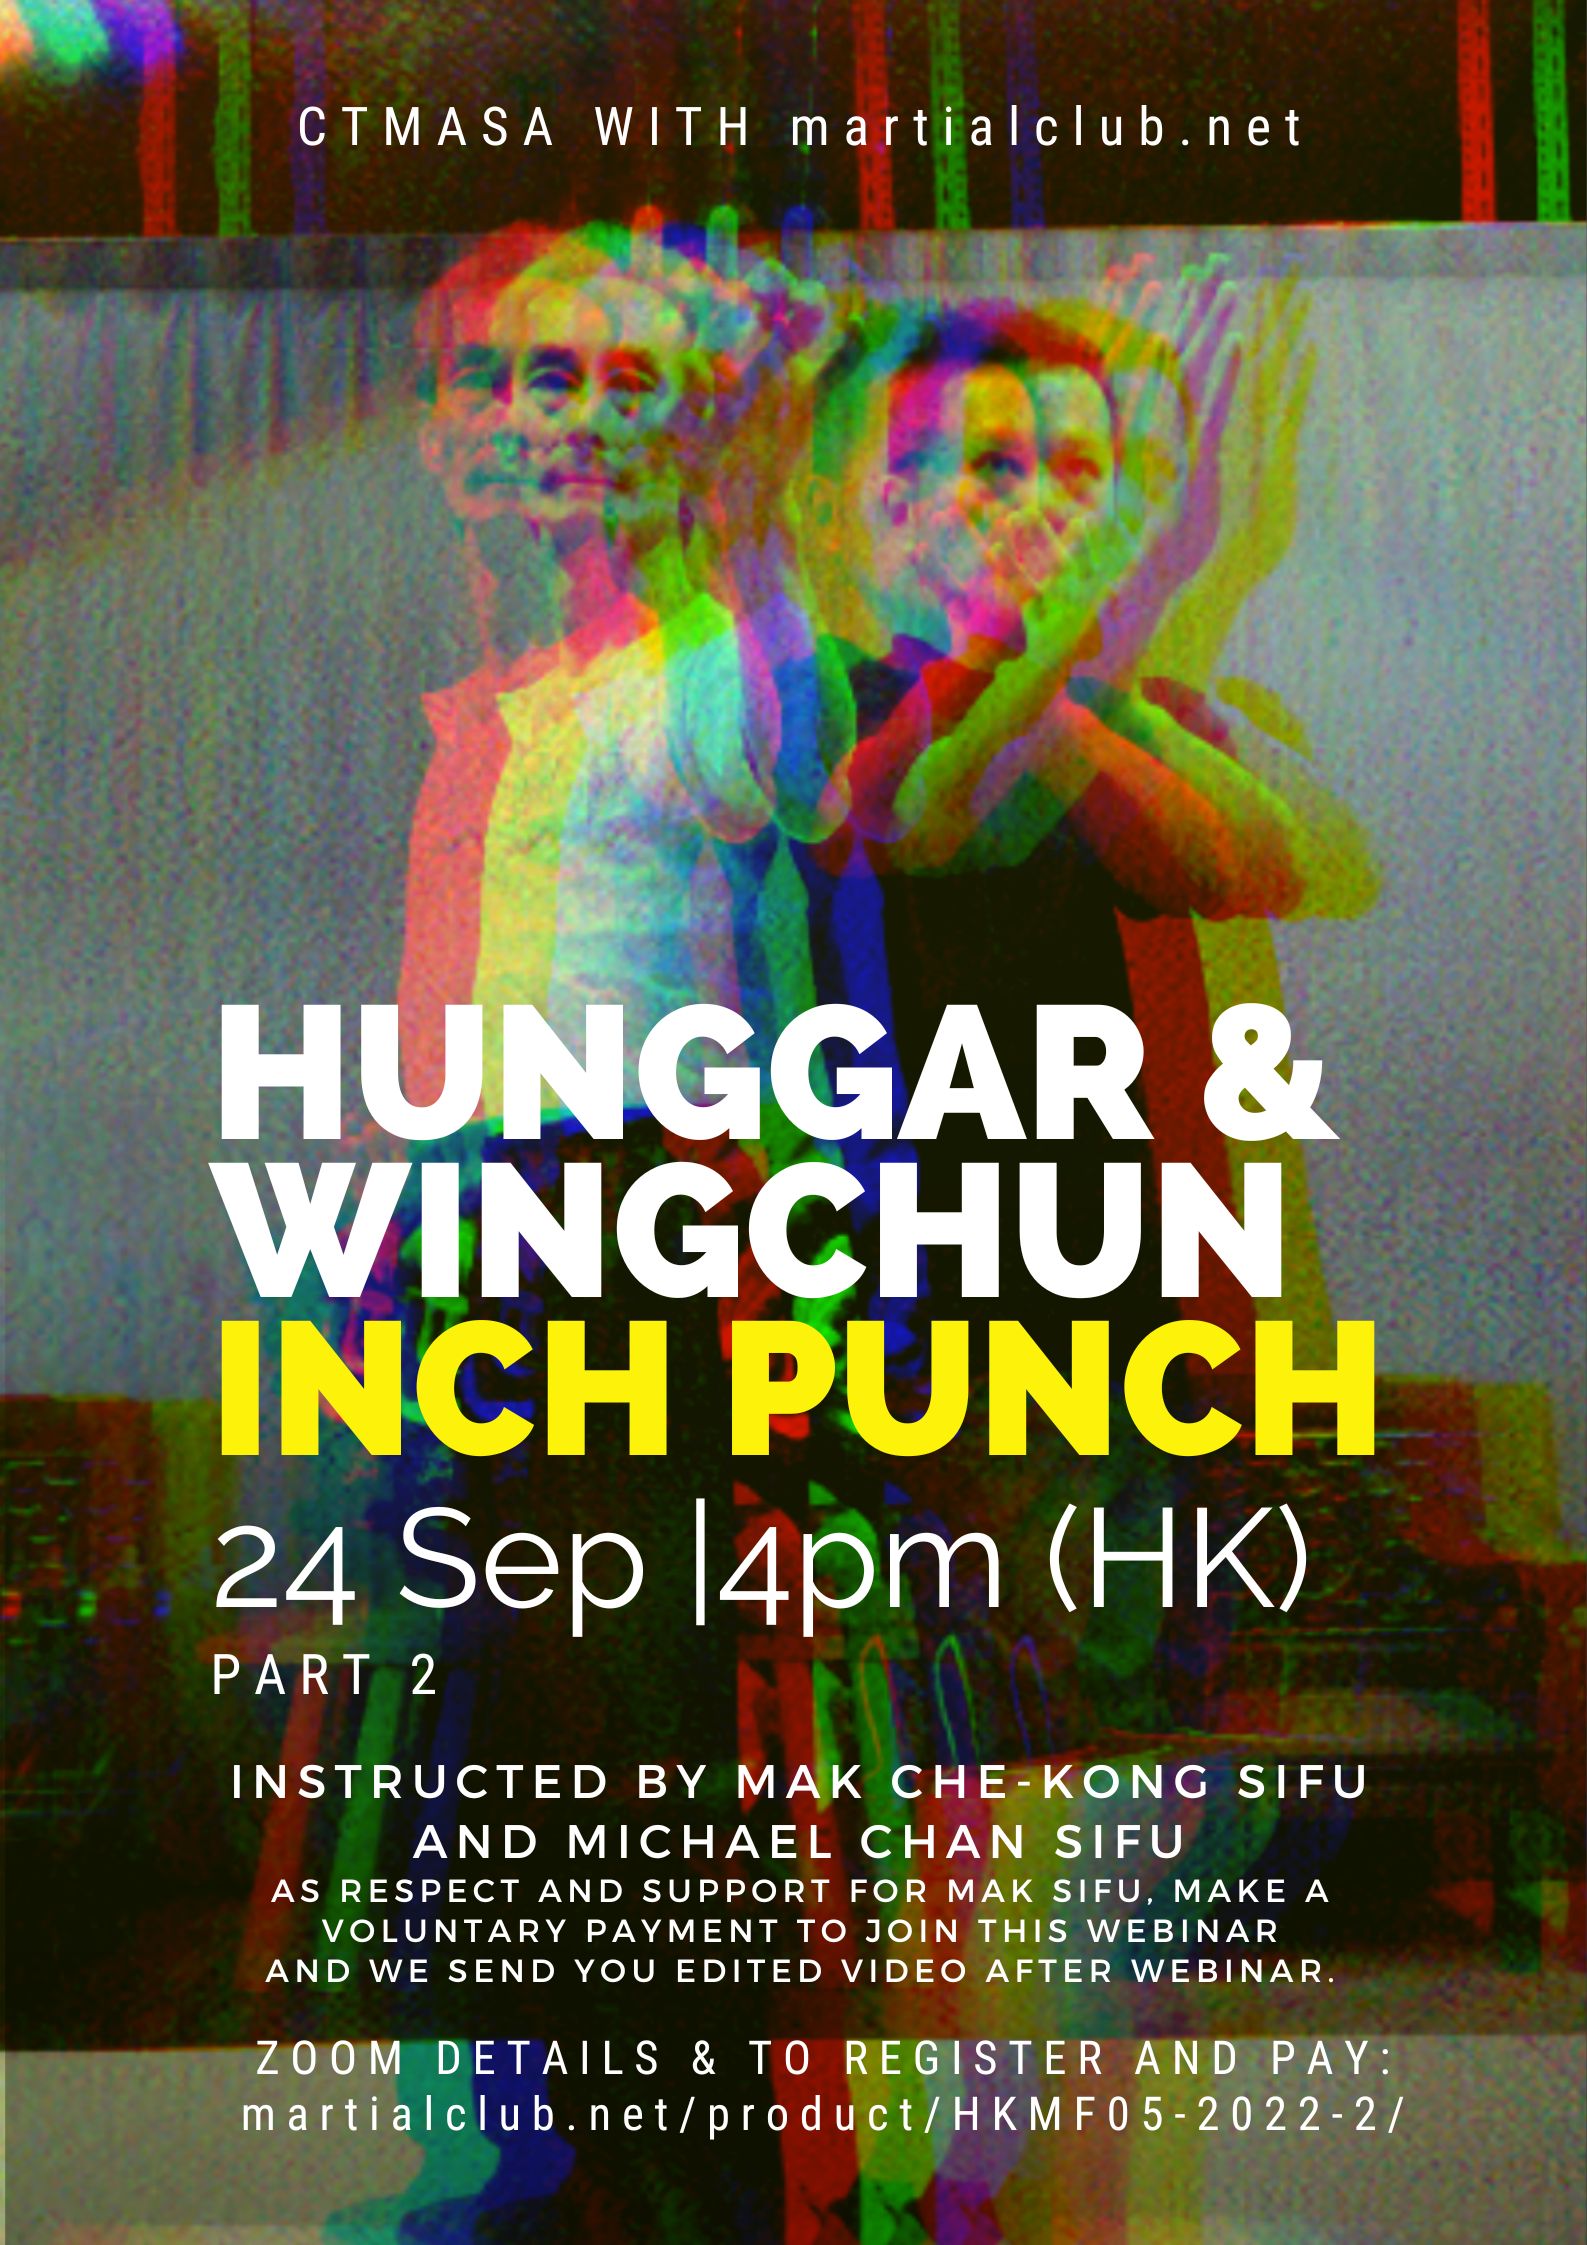 Hunggar & Wing Chun Inch Punch